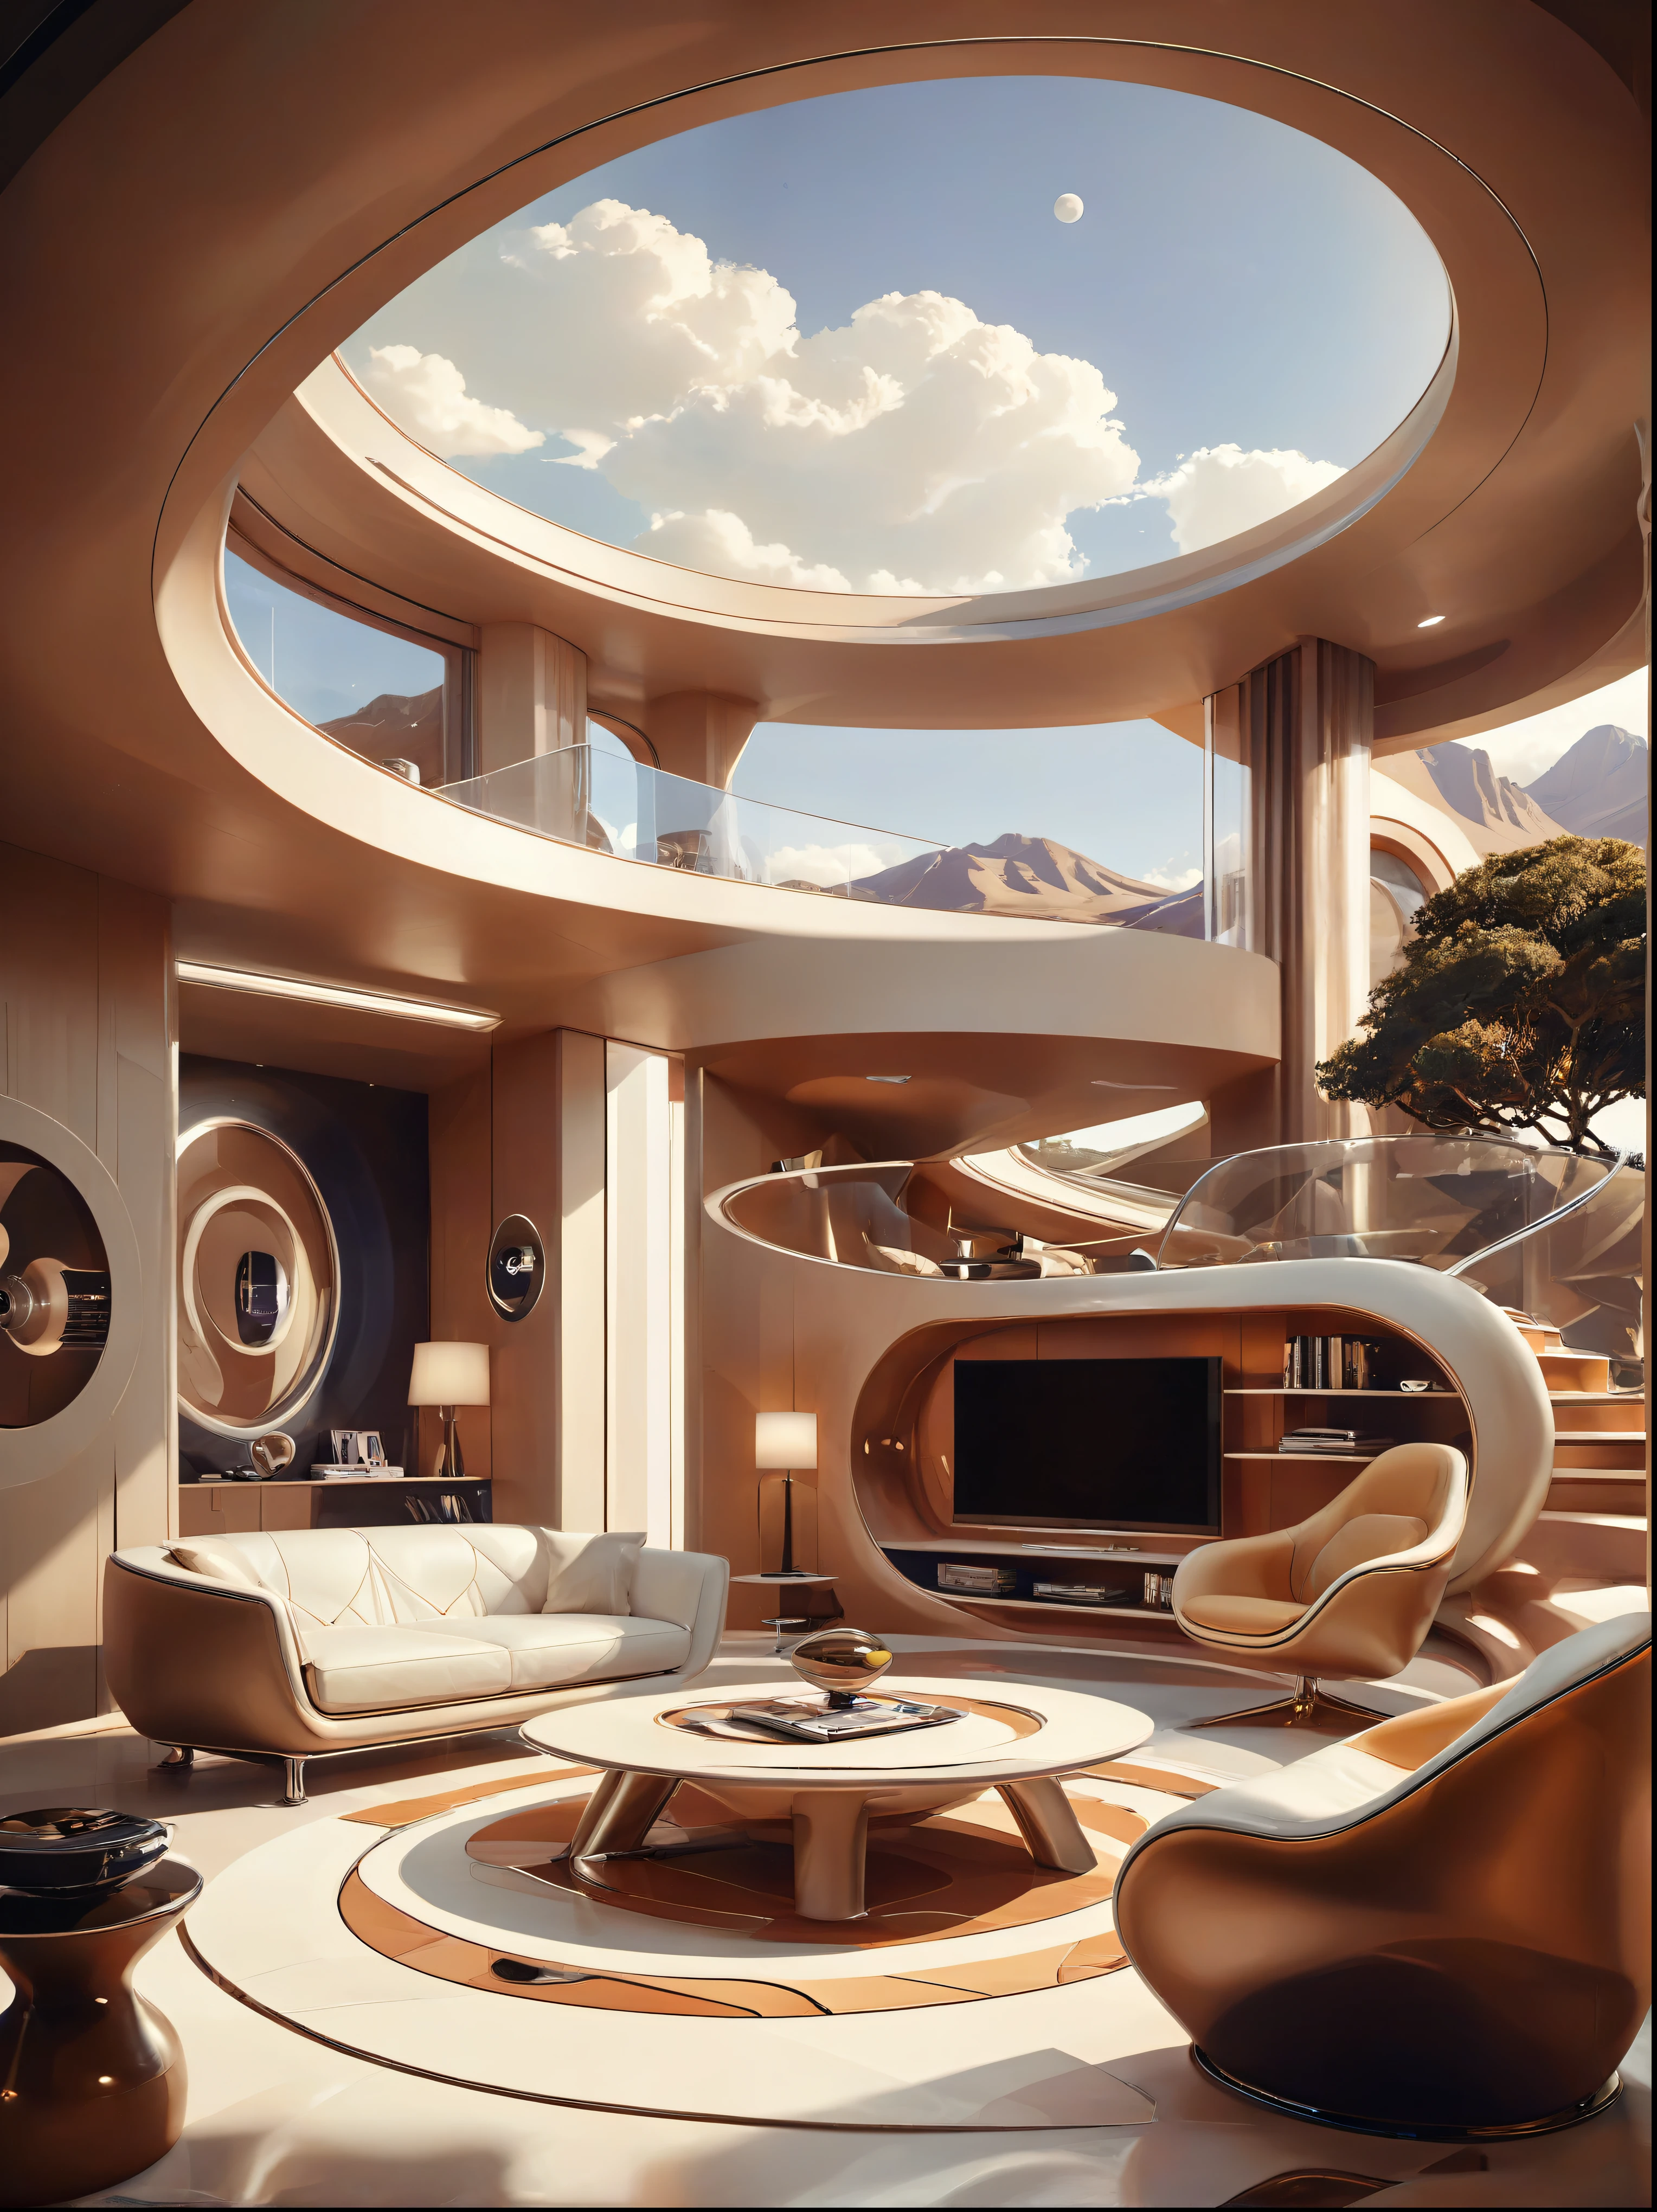 Le concept d&#39;étude du salon pour une maison futuriste intègre une fluidité organique、Cercles et formes géométriques，et utiliser l&#39;imagination artistique pour restituer des maisons et des paysages, 